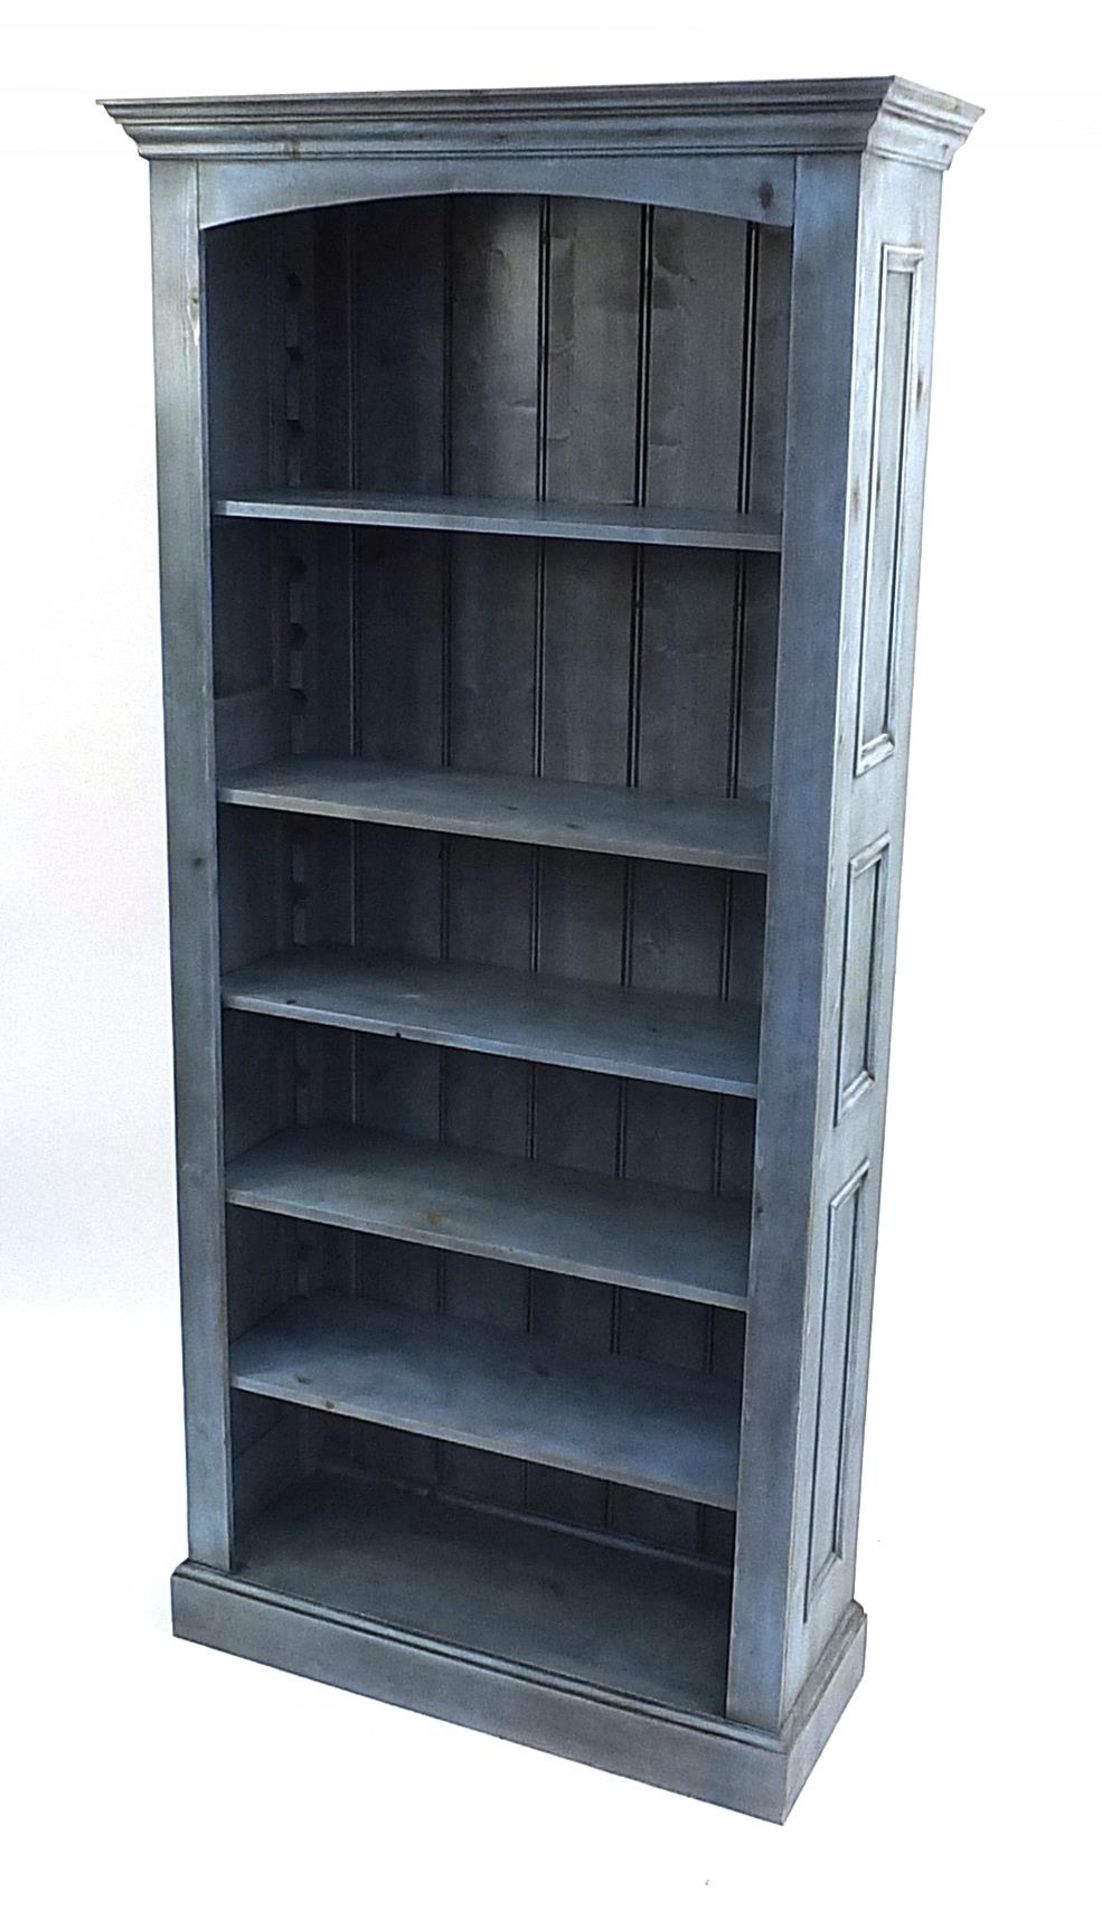 Painted pine six shelf open bookcase with adjustable shelves, 200cm H x 94cm W x 36cm D